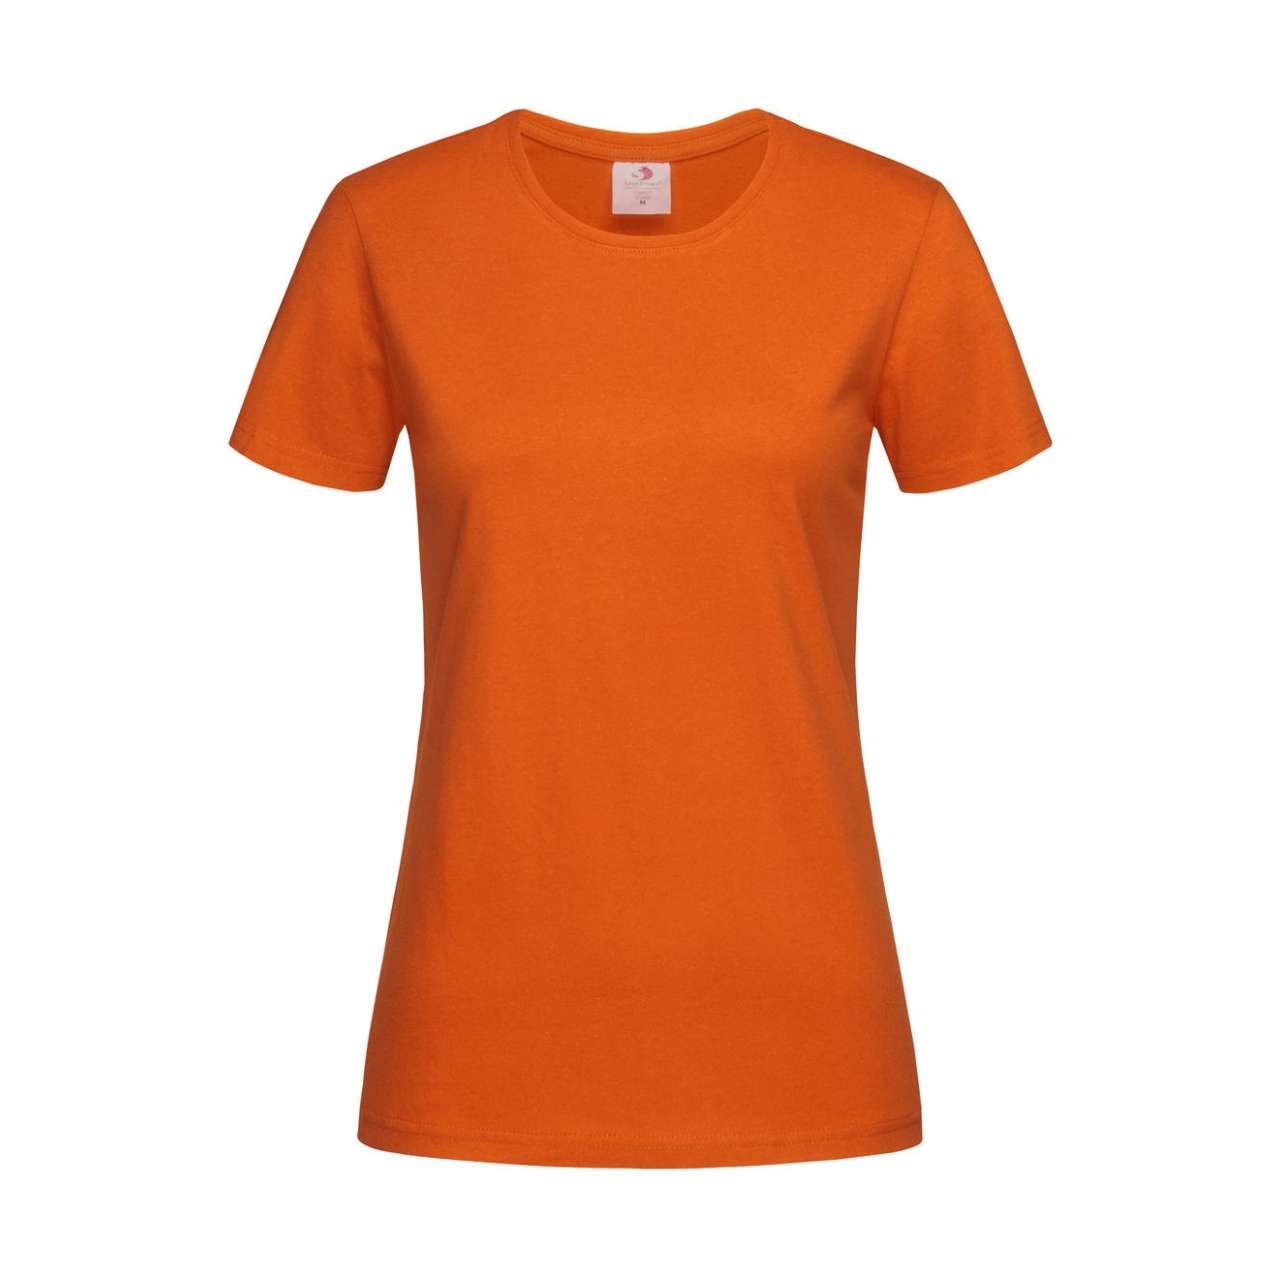 Tričko dámské Stedman Fitted s kulatým výstřihem - oranžové, XXL